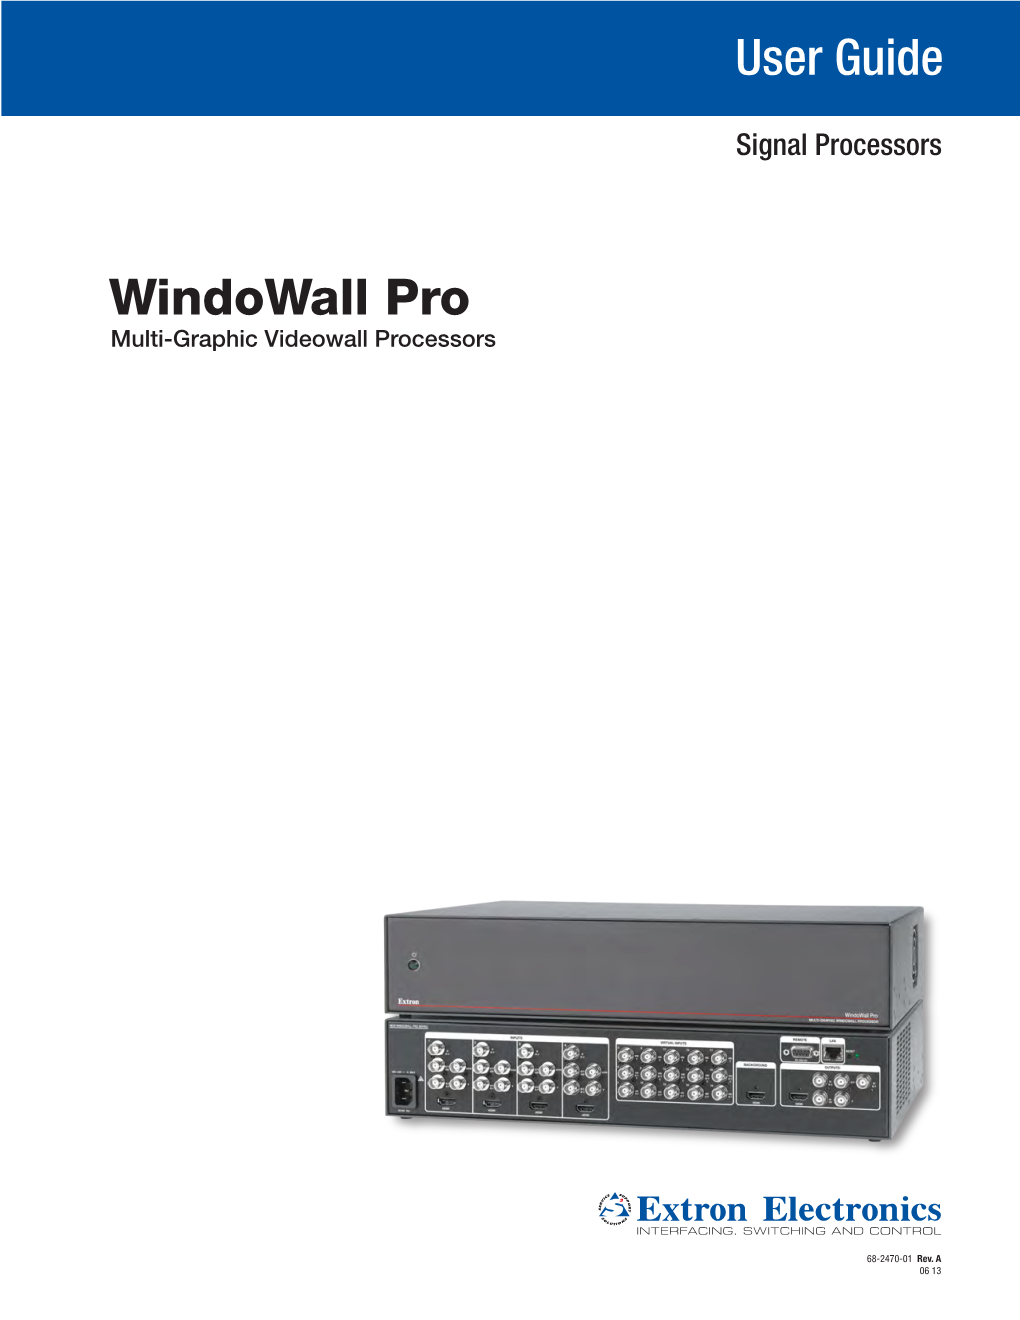 Extron Windowall Pro Multi-Graphic Videowall Processors User Guide